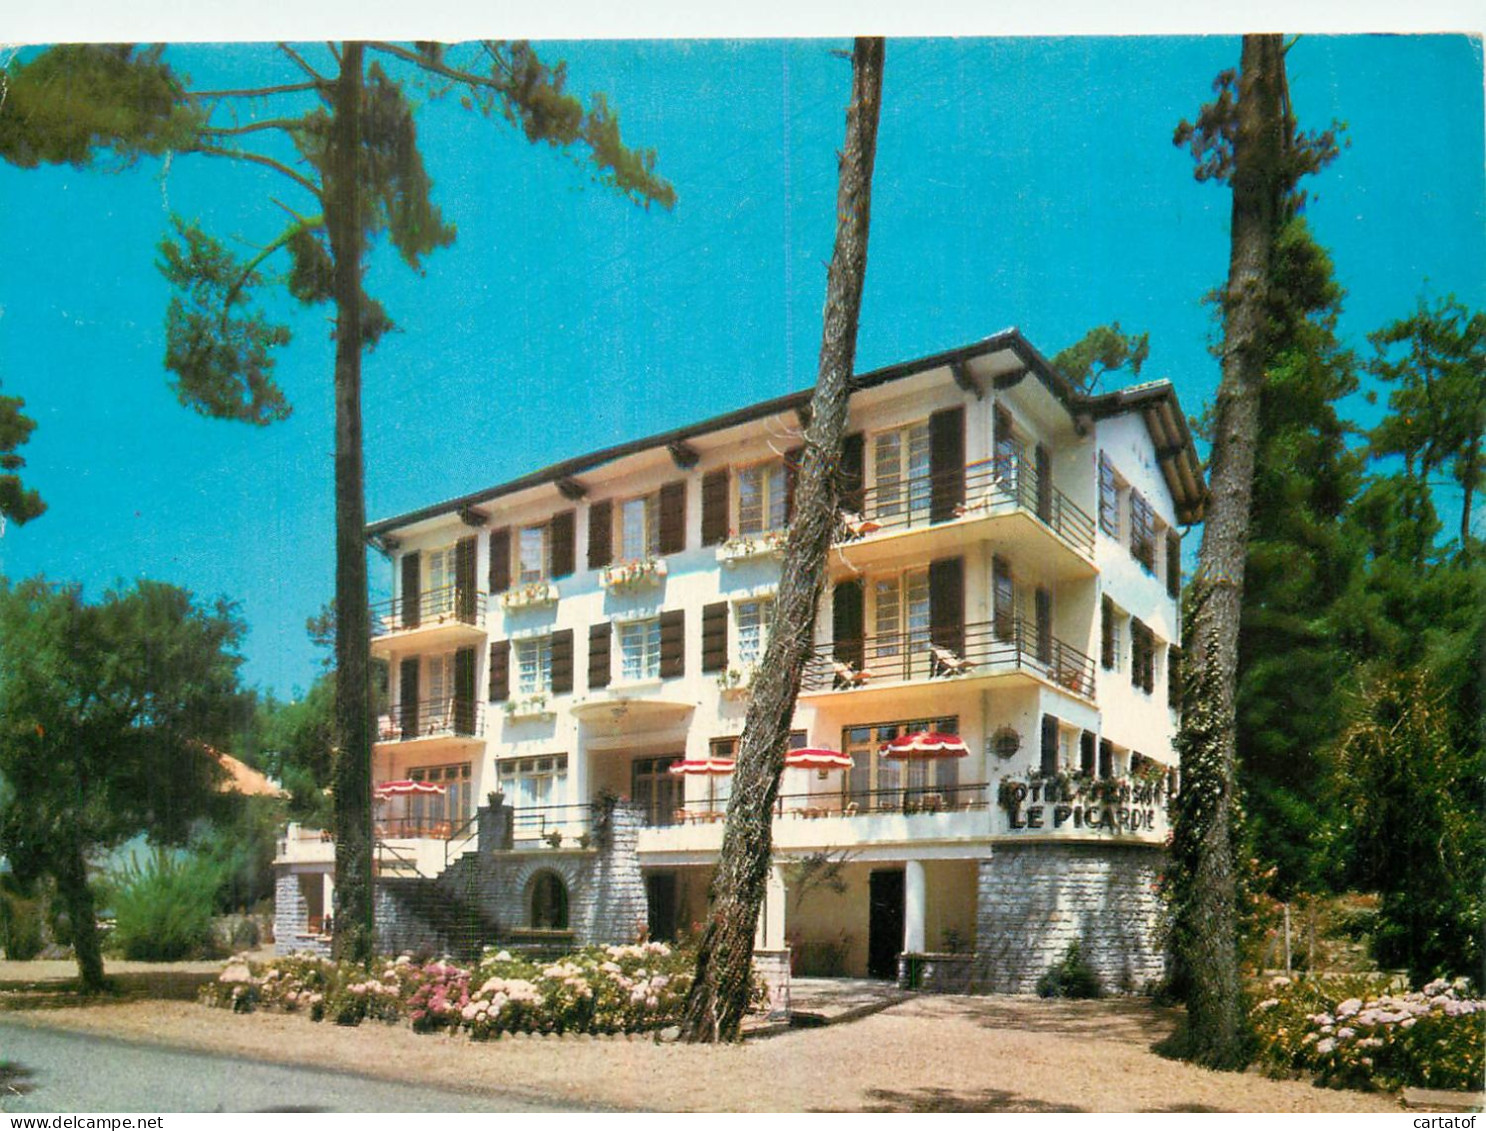 HOSSEGOR . PICARDIE HOTEL . Avenue De La Palombière - Hossegor